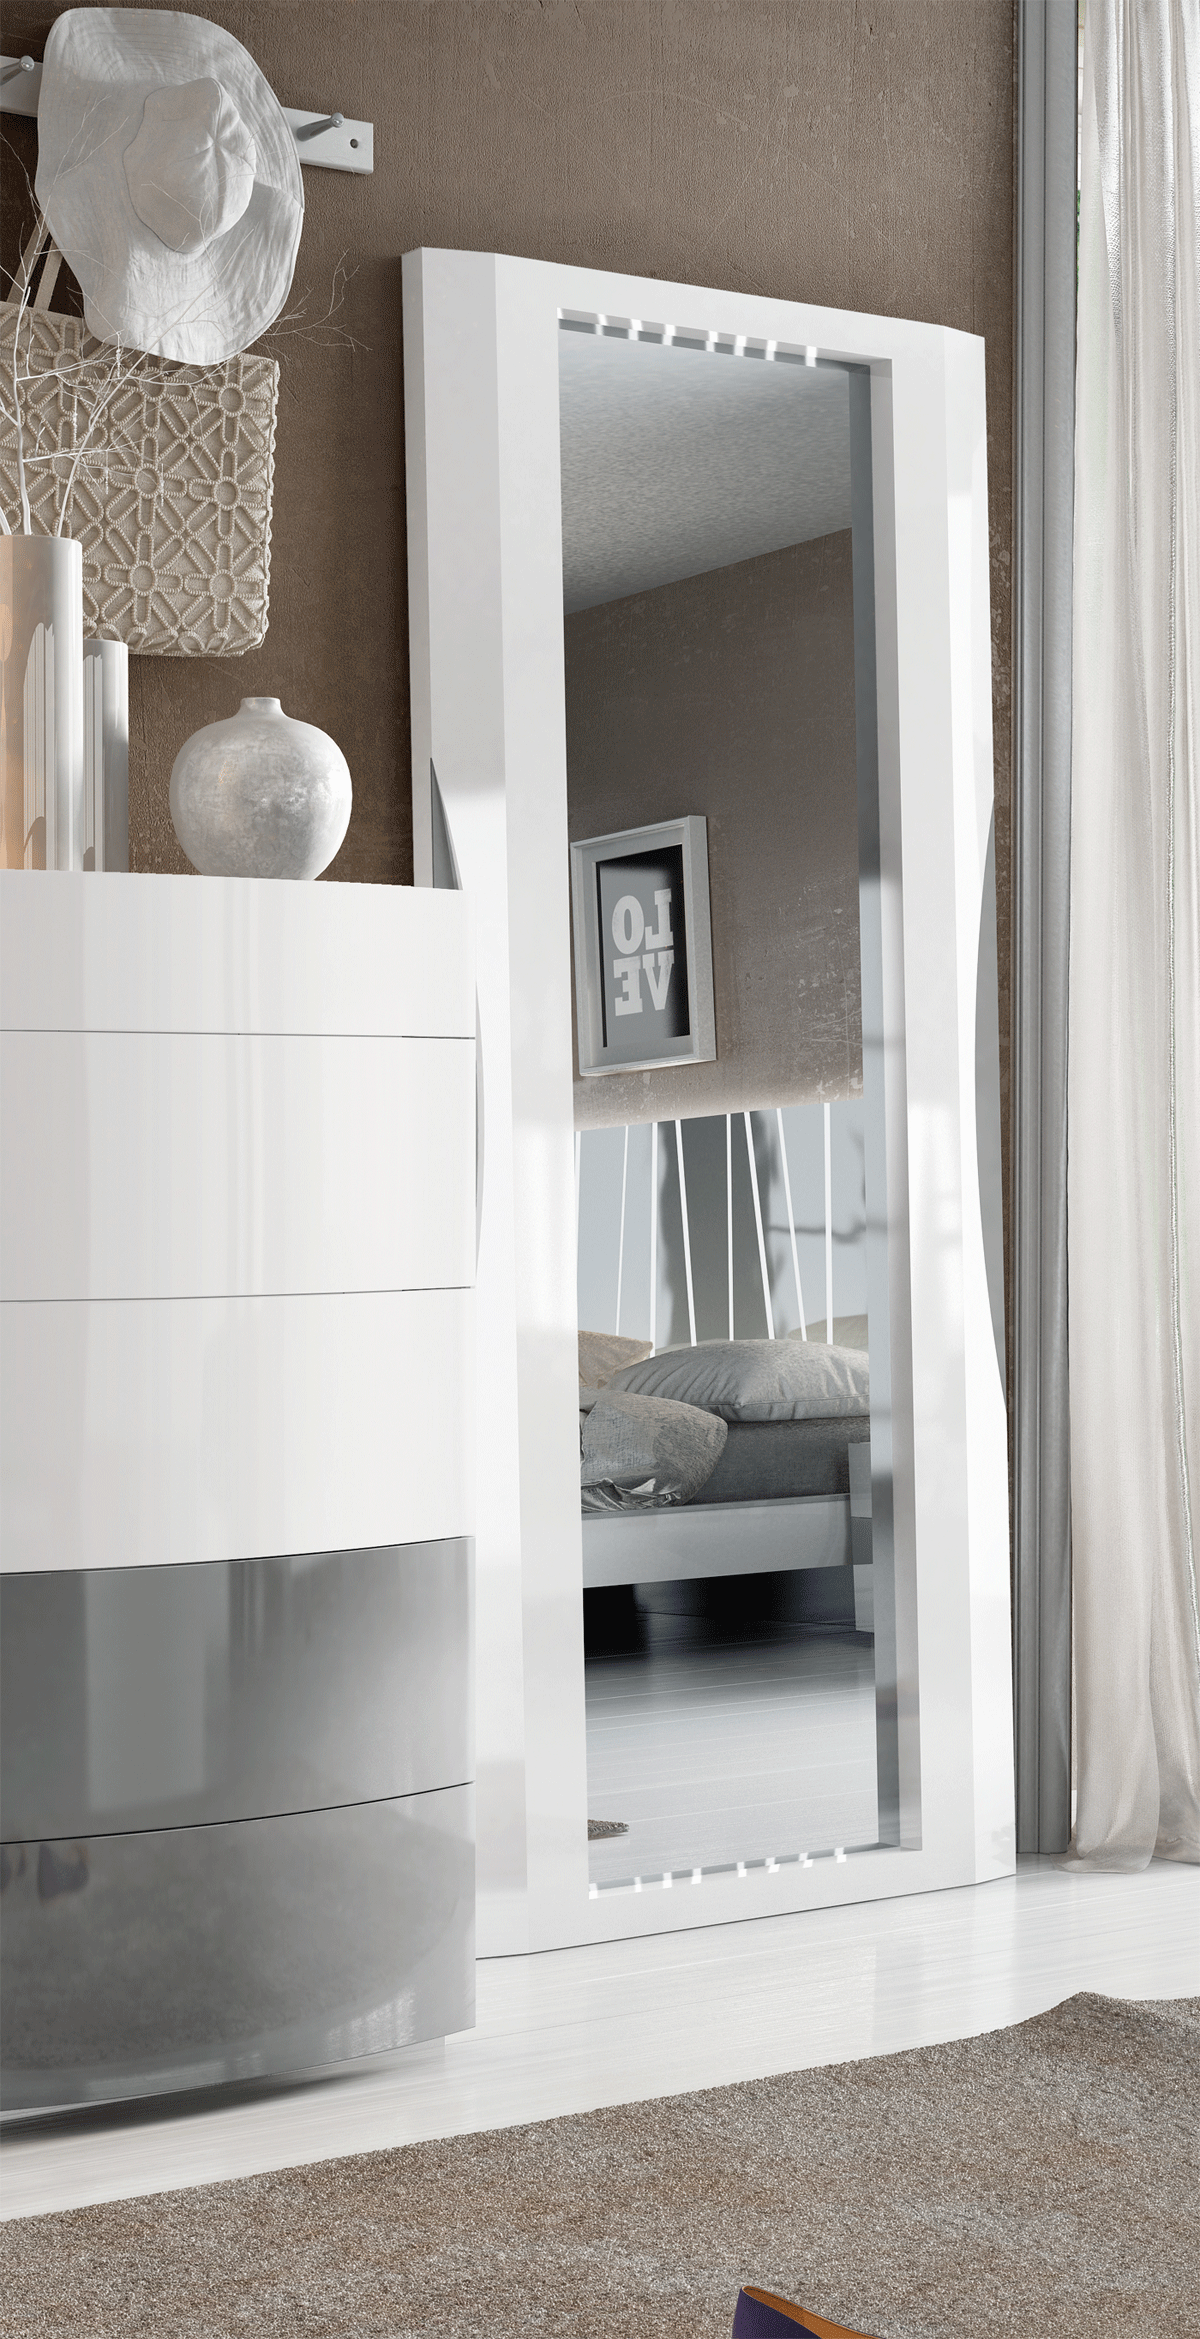 Bedroom Furniture Nightstands Ronda standing mirror